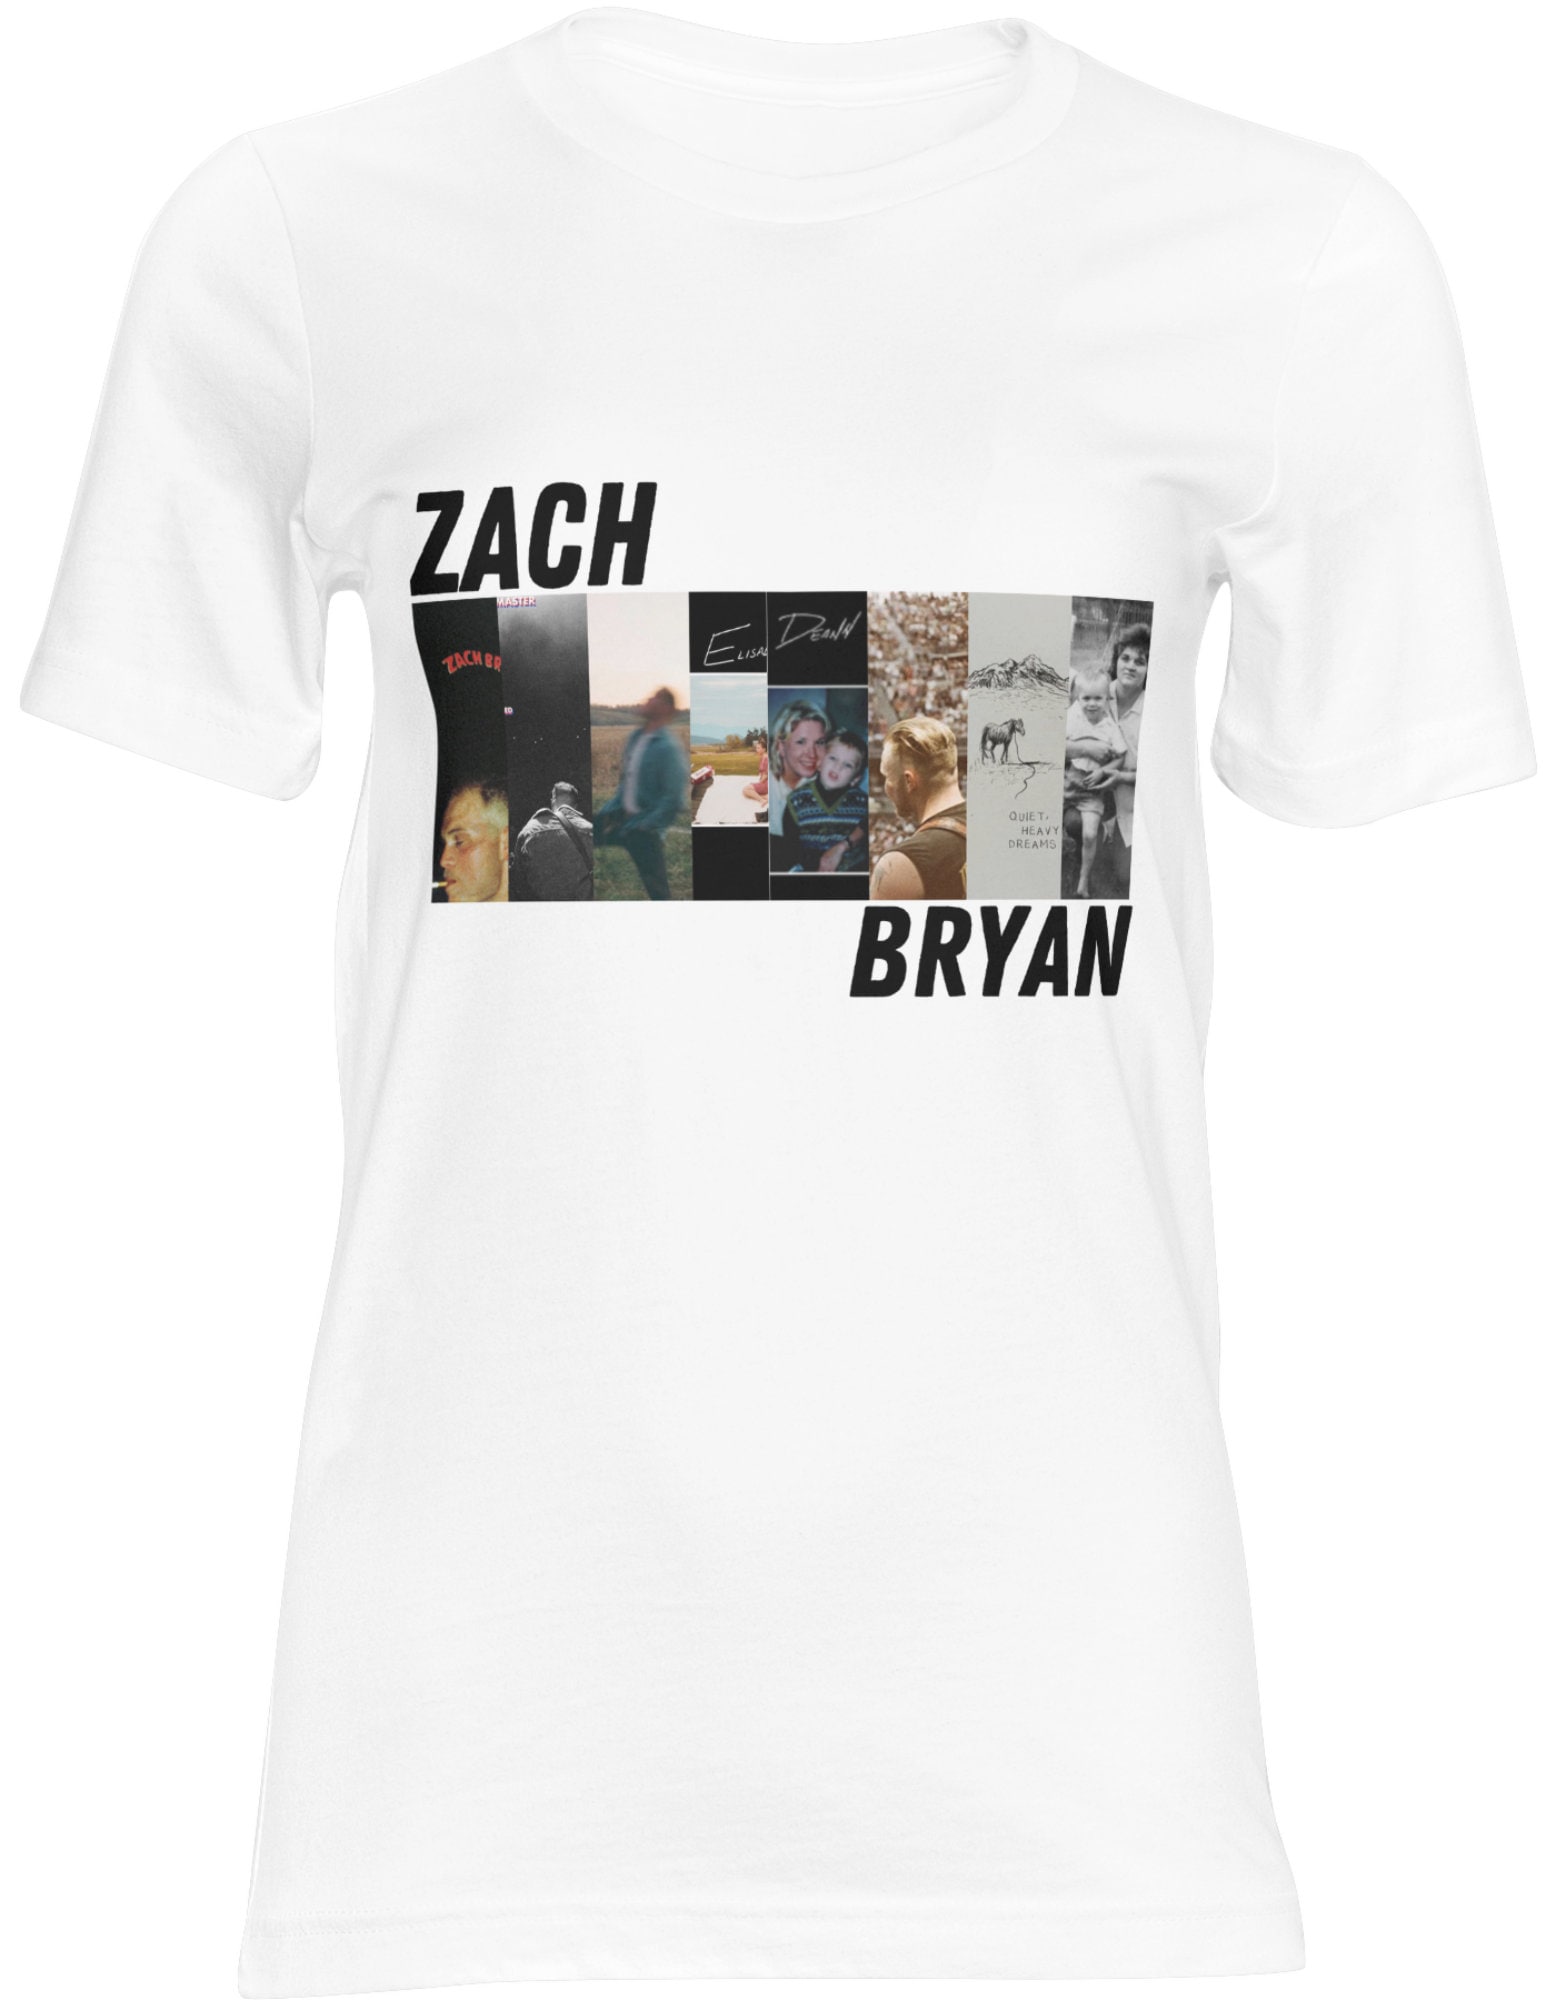 zach bryan album shirt 8285 ozwed